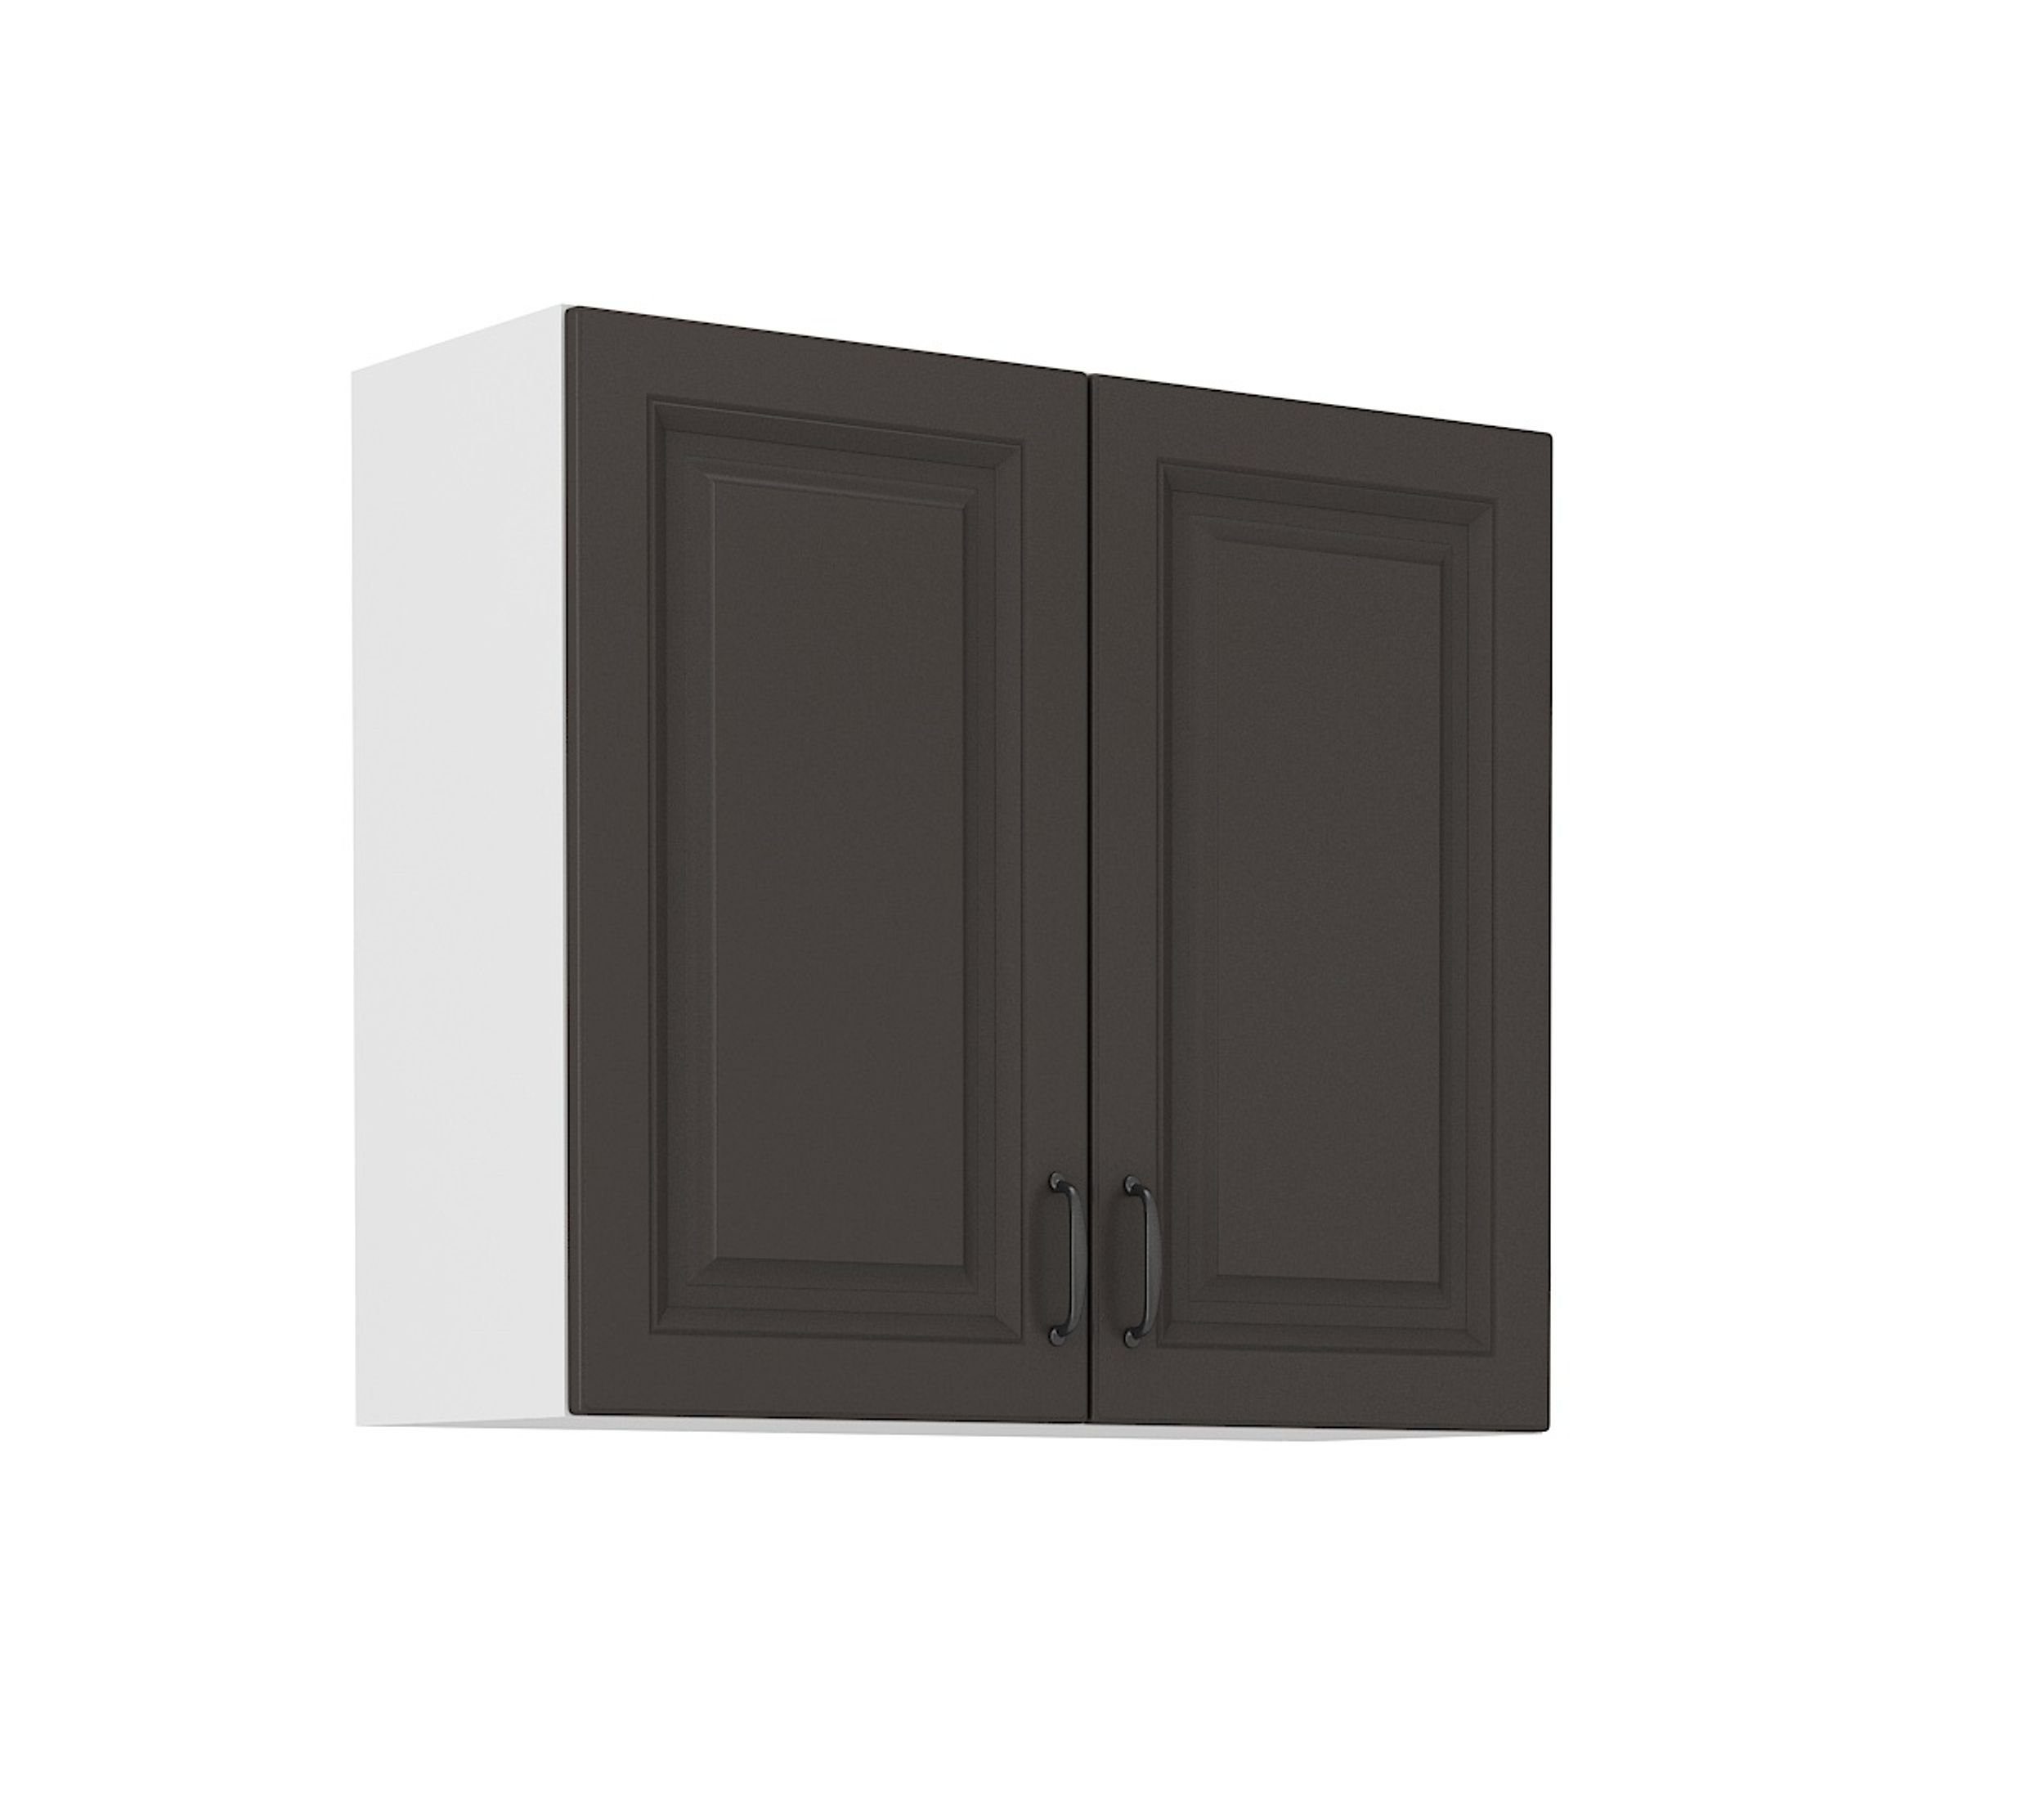 Küchen-Preisbombe Hängeschrank 60 cm Küche Stilo Grau Küchenzeile Küchenblock Einbauküche Landhaus